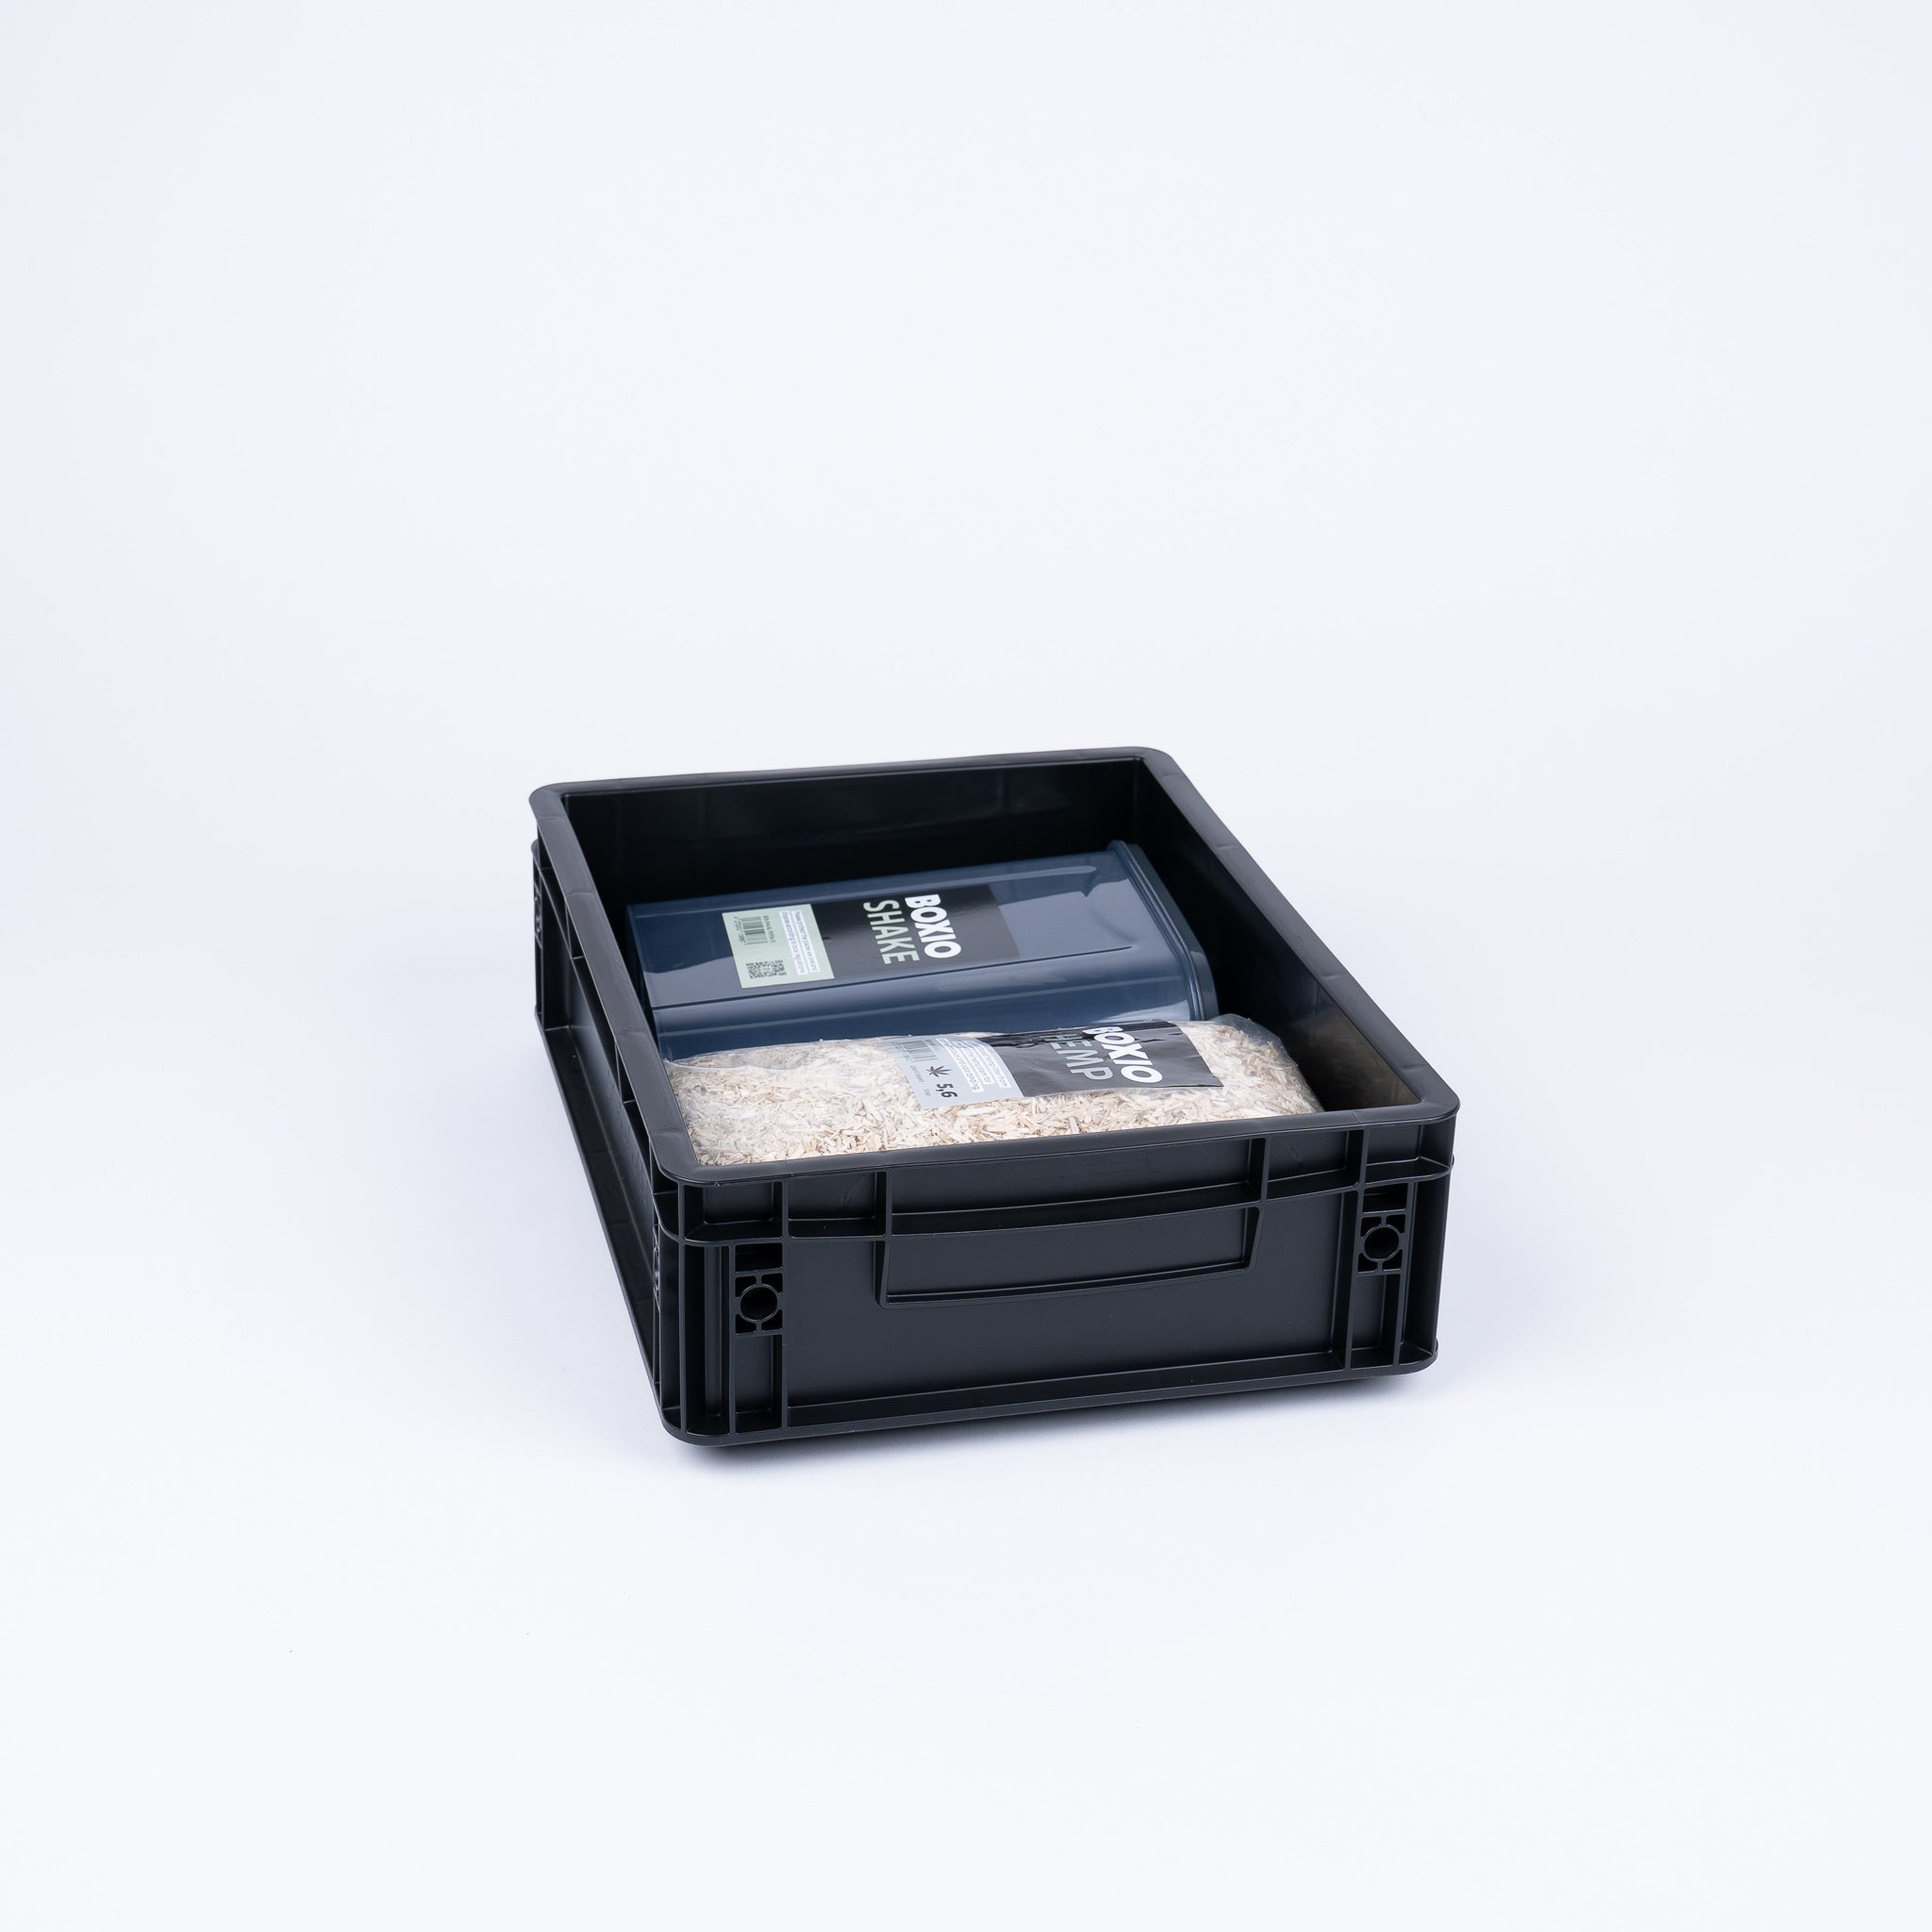 BOXIO SANITARY - Complete set met urineverwijderend toilet, mobiele wastafel en accessoires